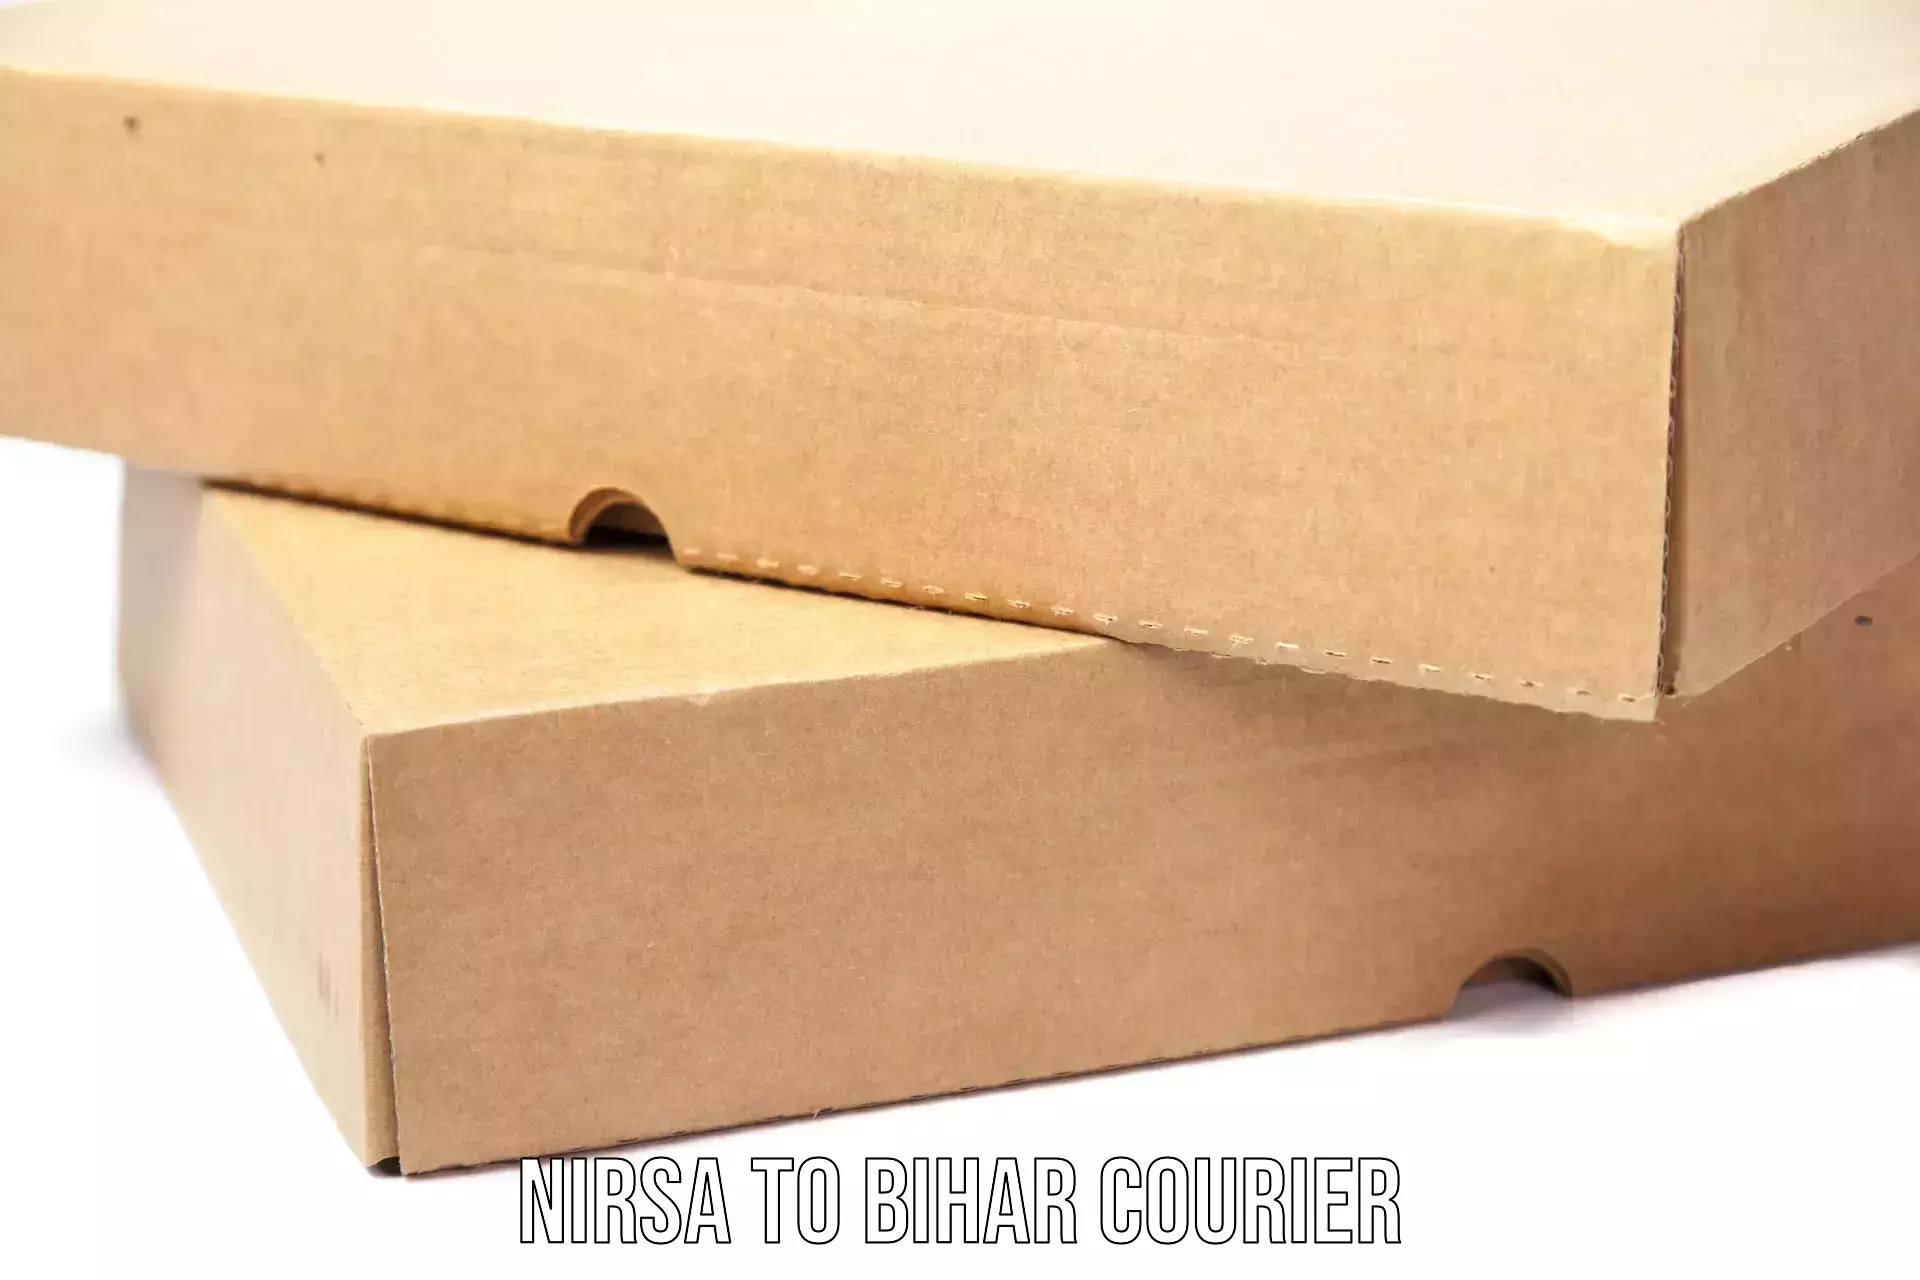 Secure packaging in Nirsa to Dinara